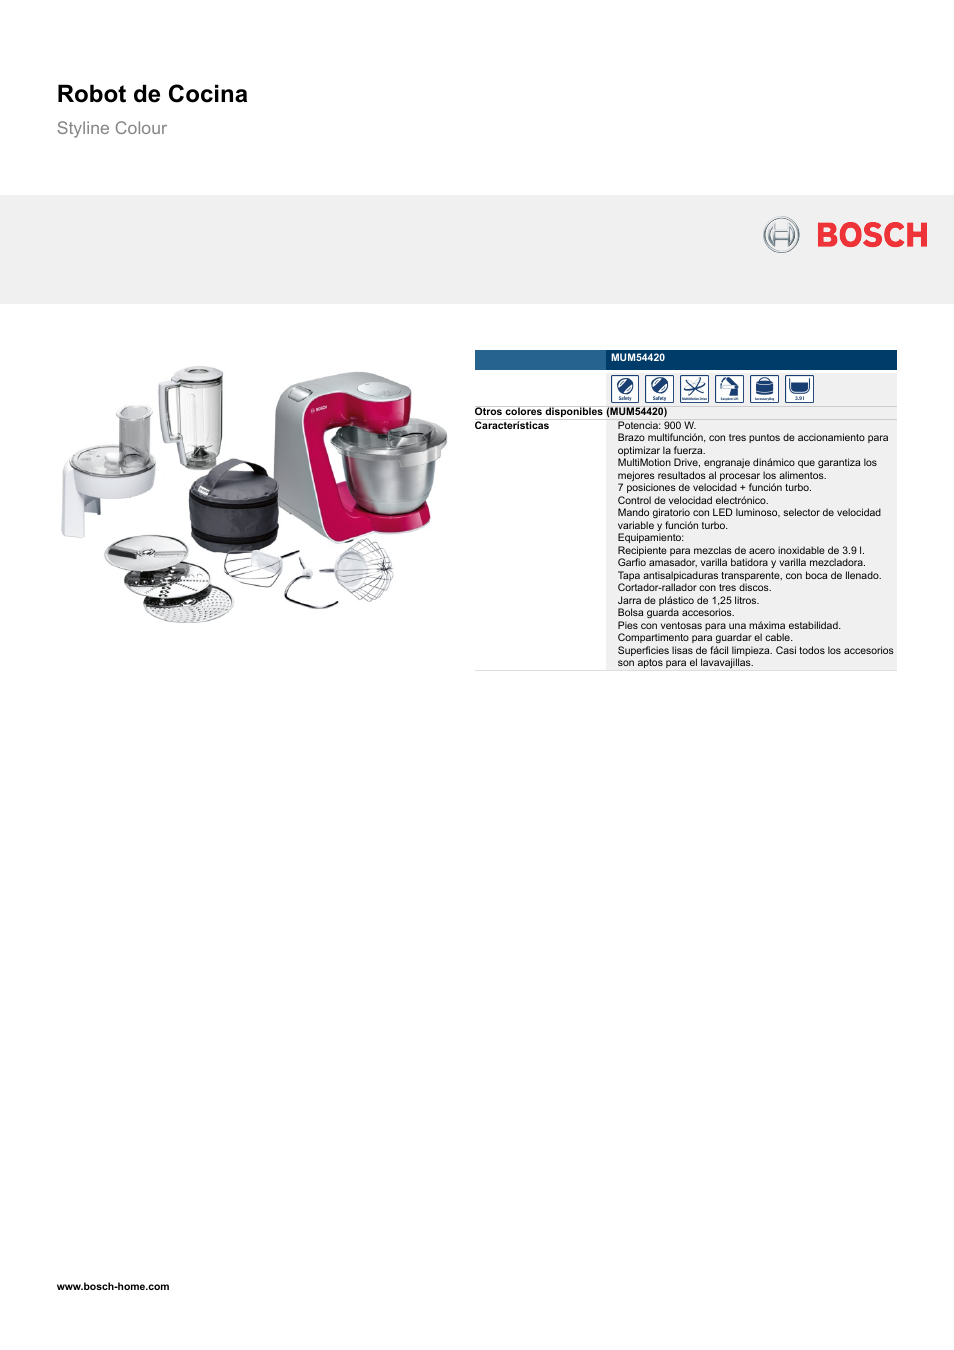 Bosch MUM54420 Robot de Cocina Styline Colour EAN 4242002690506 Manual del usuario | Páginas: 2